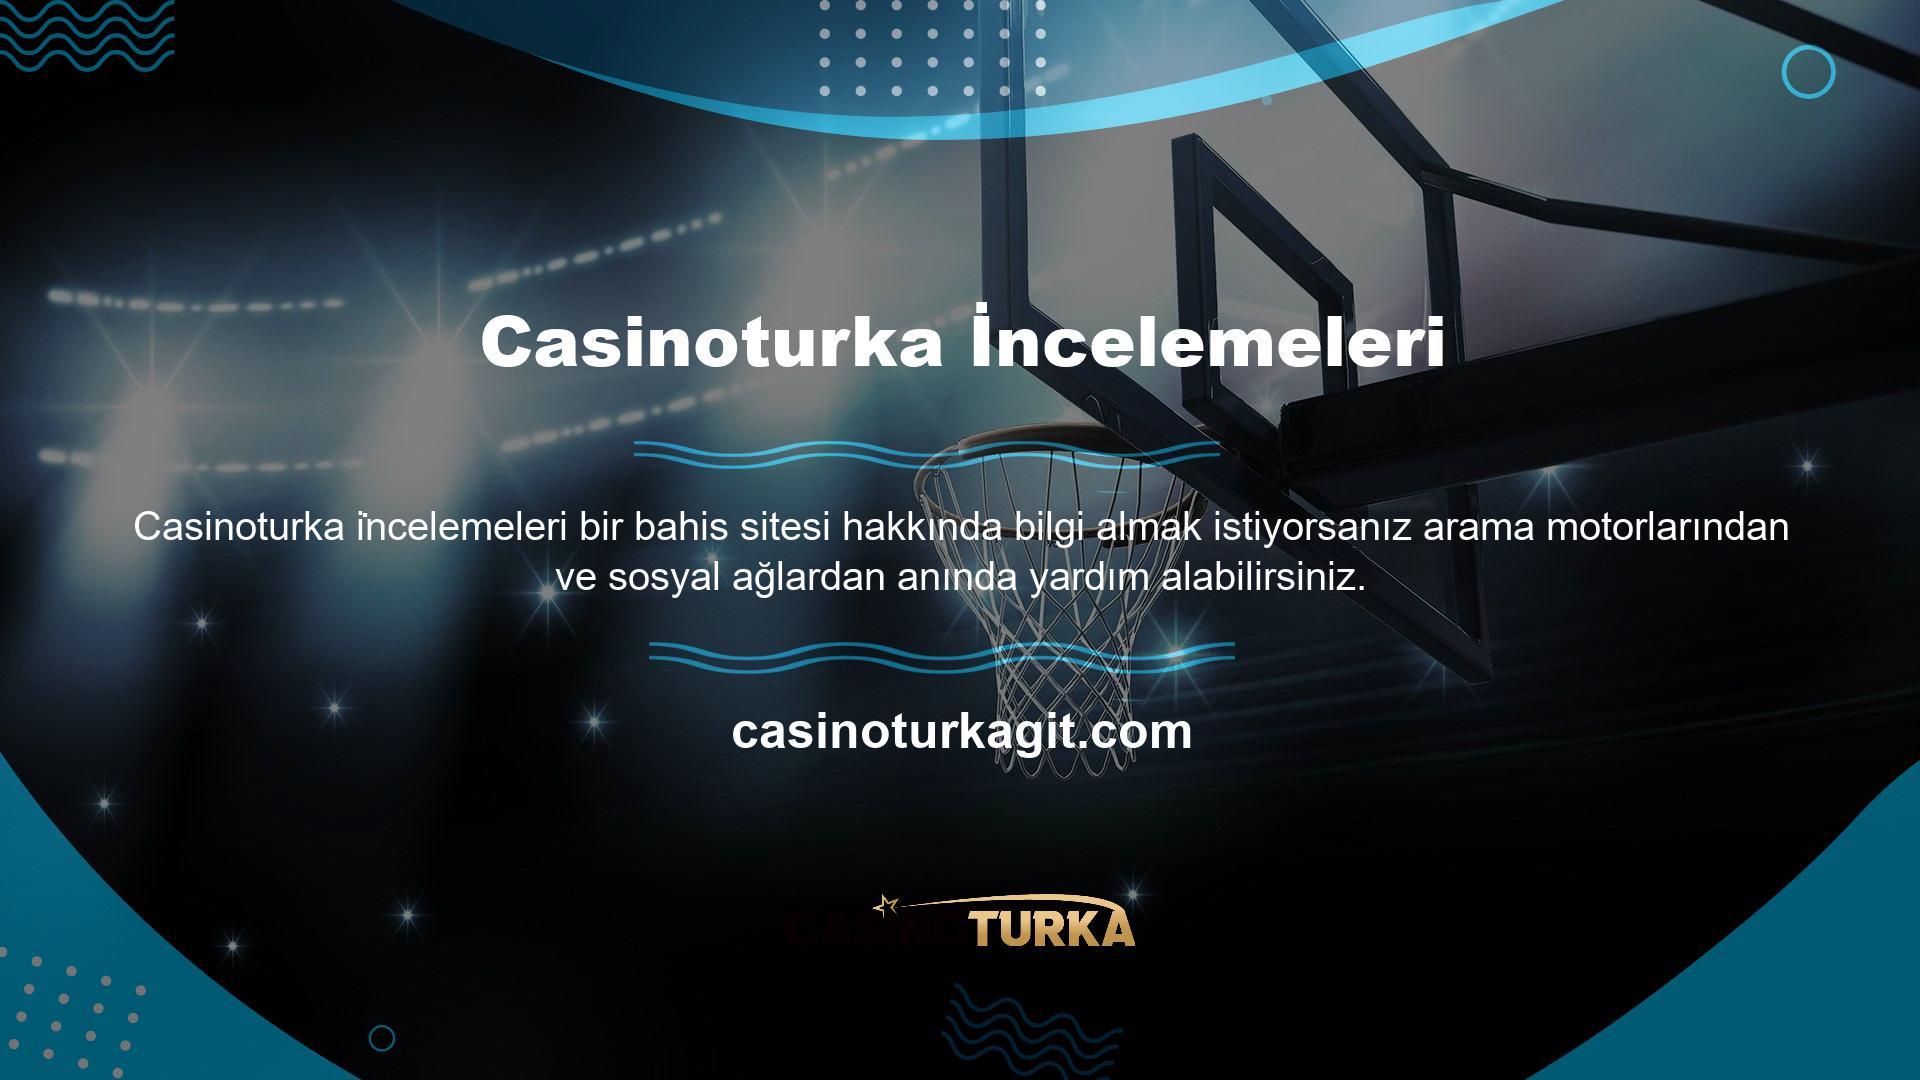 Casinoturka incelemeleri temel olarak web sitesinin performansını ve kalitesini gösterir